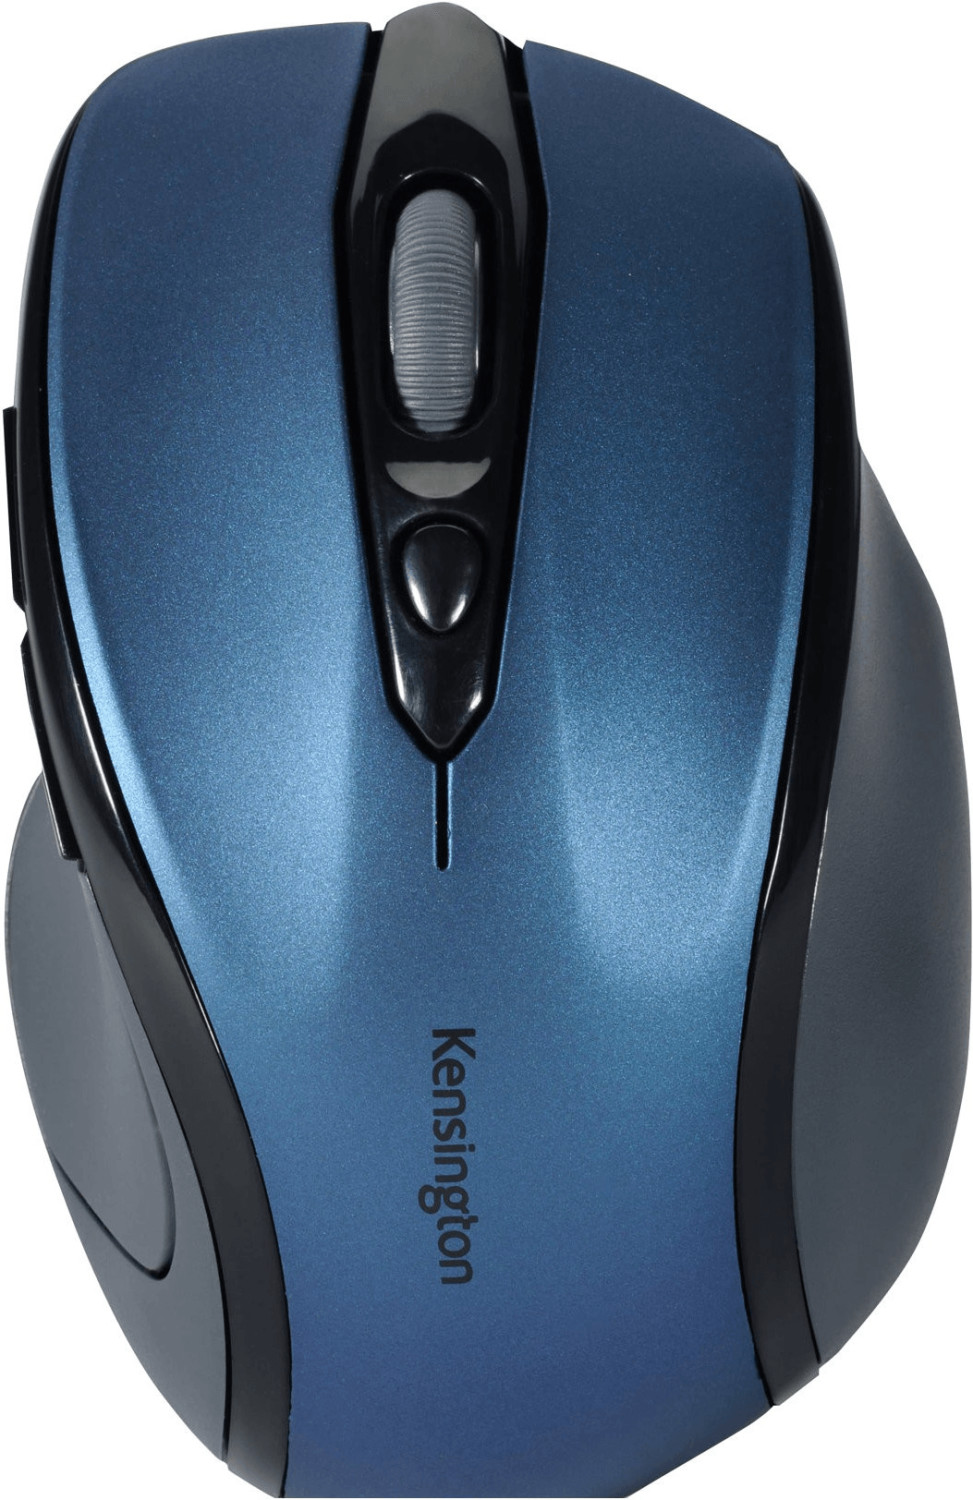 Kensington Pro Fit wireless Mid Size Mouse (sapphire blue)